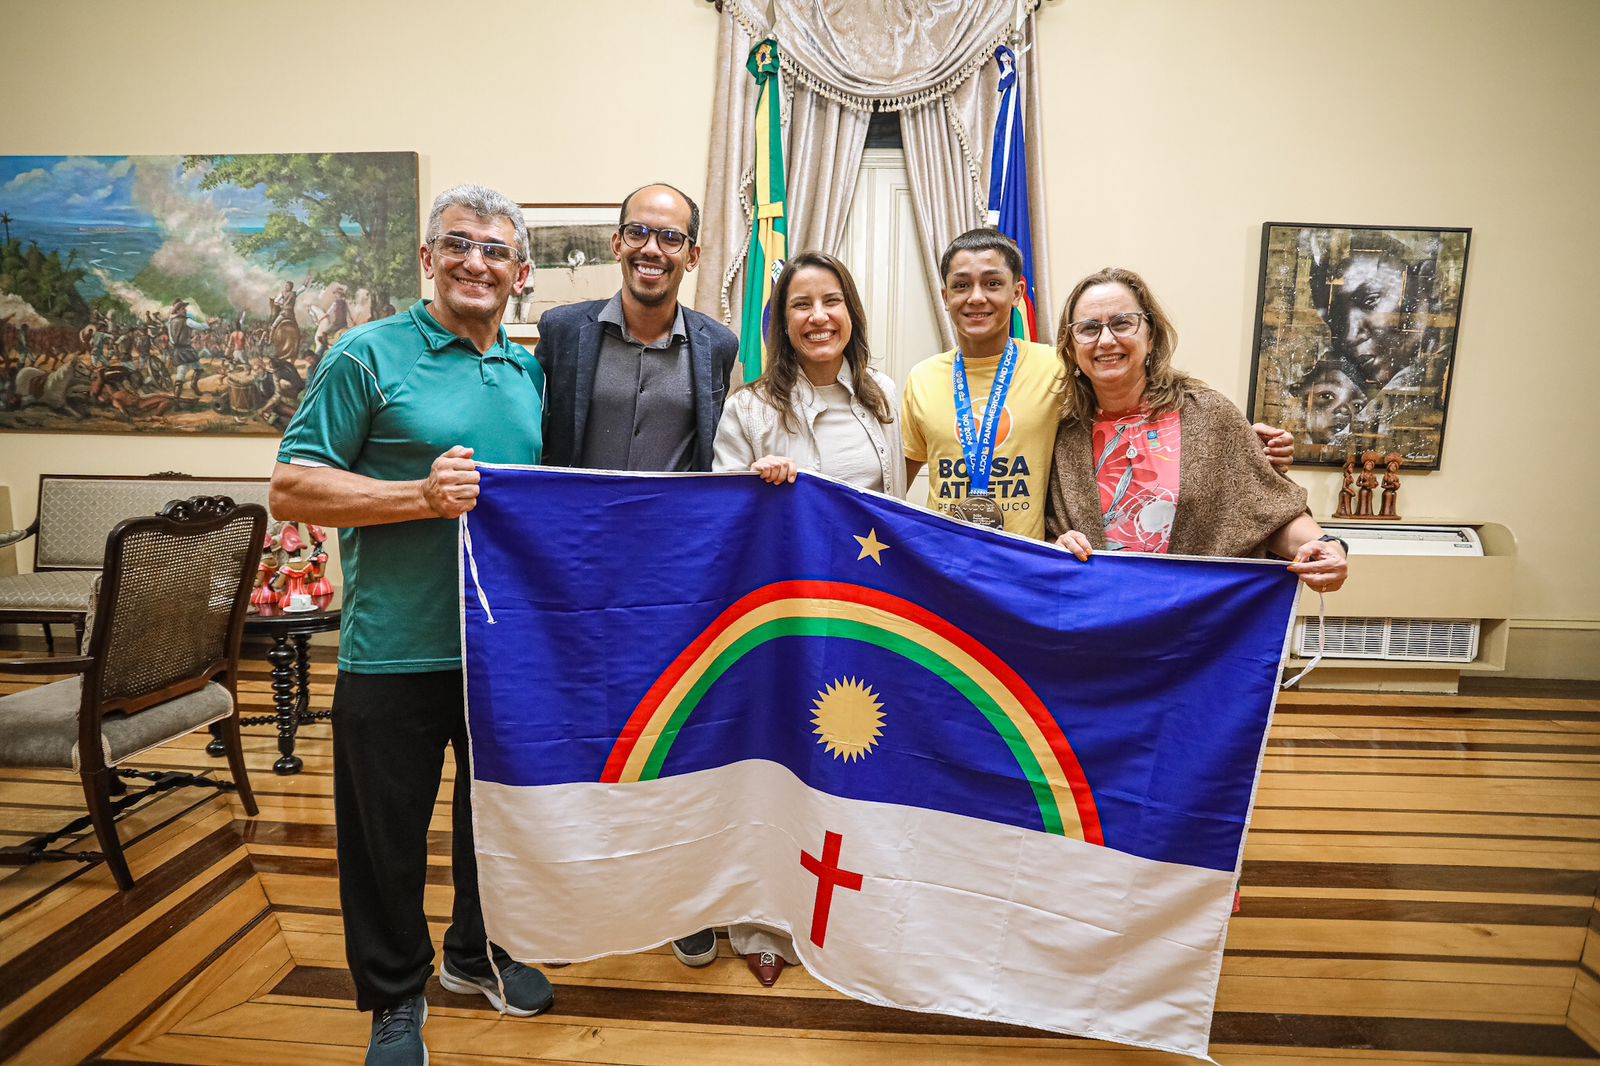  Atleta do Bolsa Atleta recebe reconhecimento da governadora Raquel Lyra por medalha de ouro no Campeonato Pan-Americano e Oceania de Judô